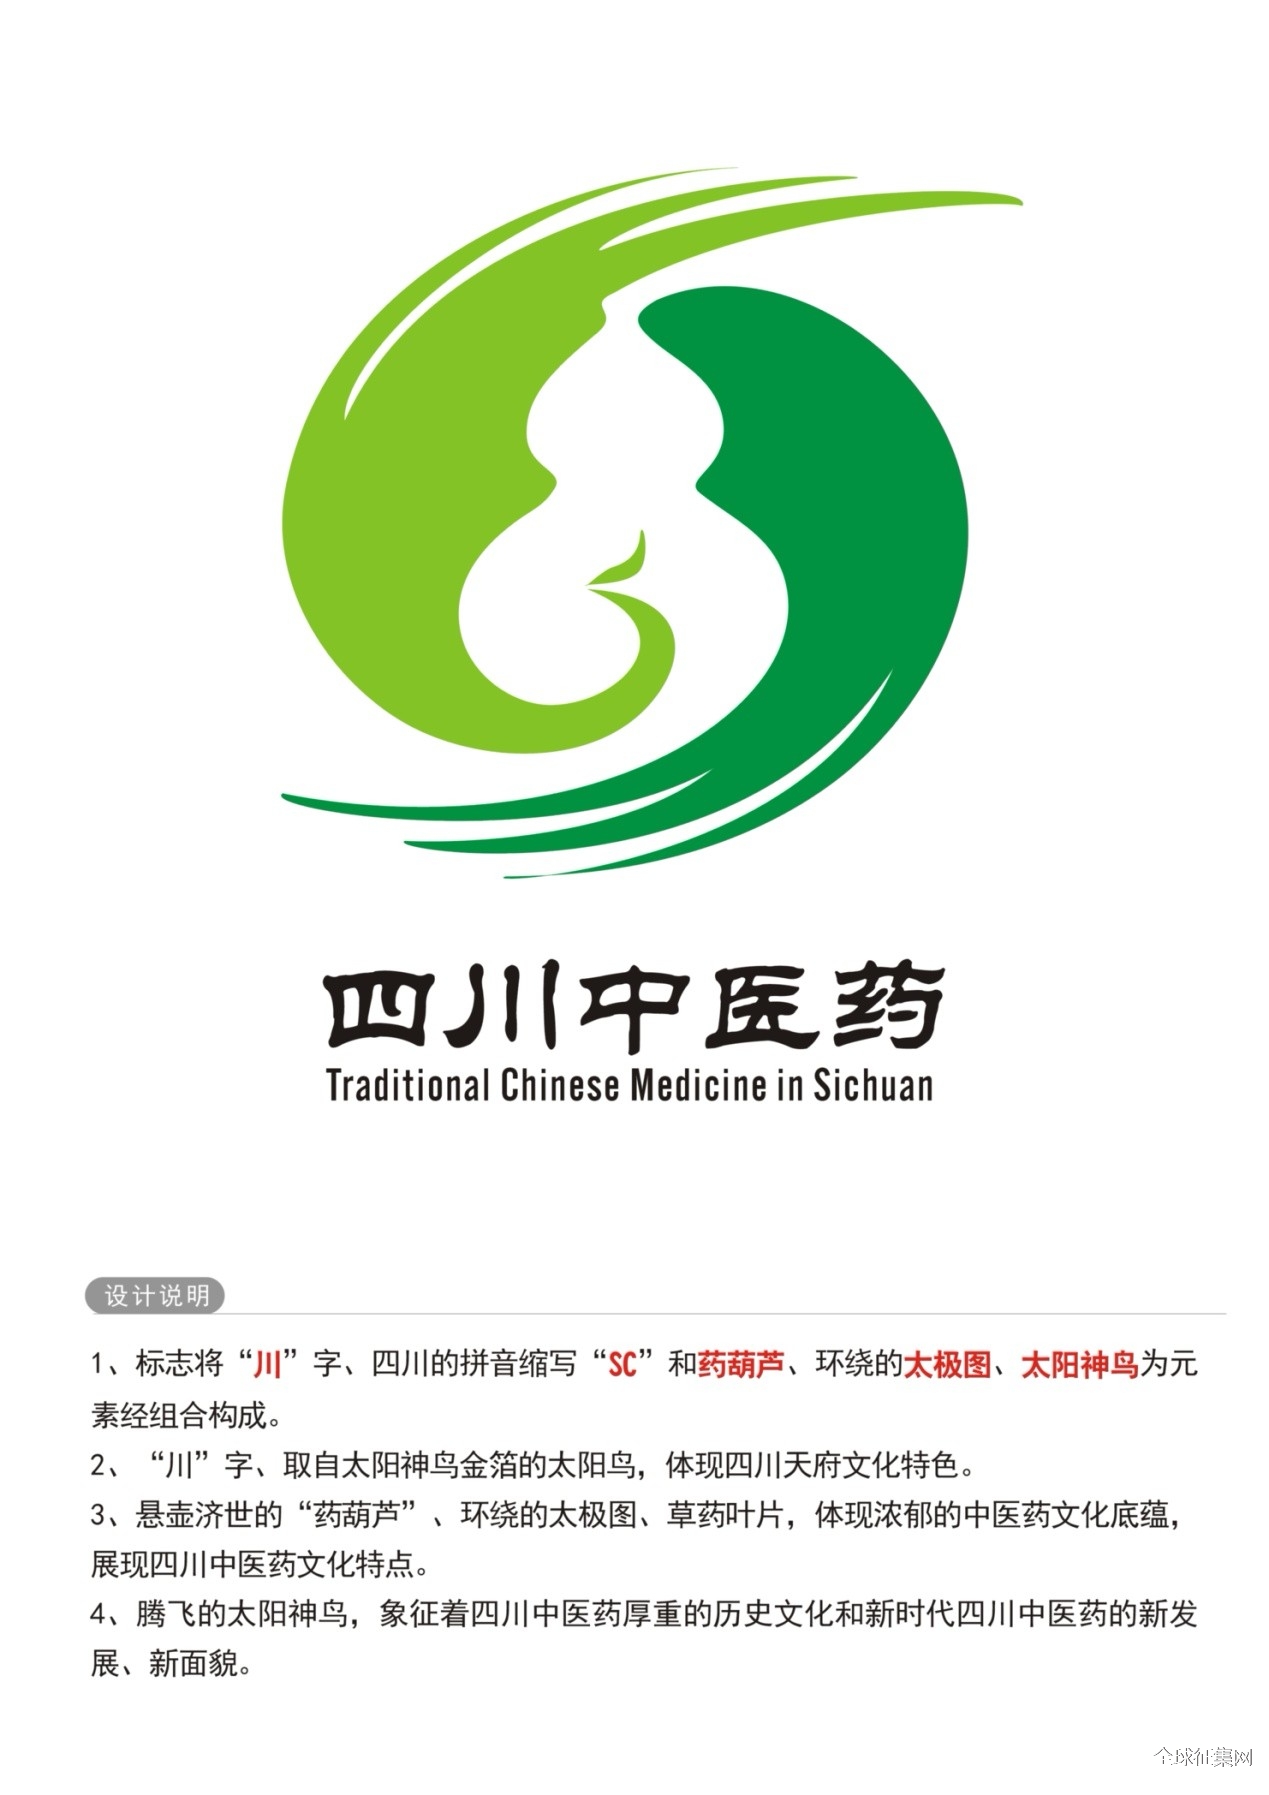 速来四川中医药文化logo征集作品投票活动开始啦